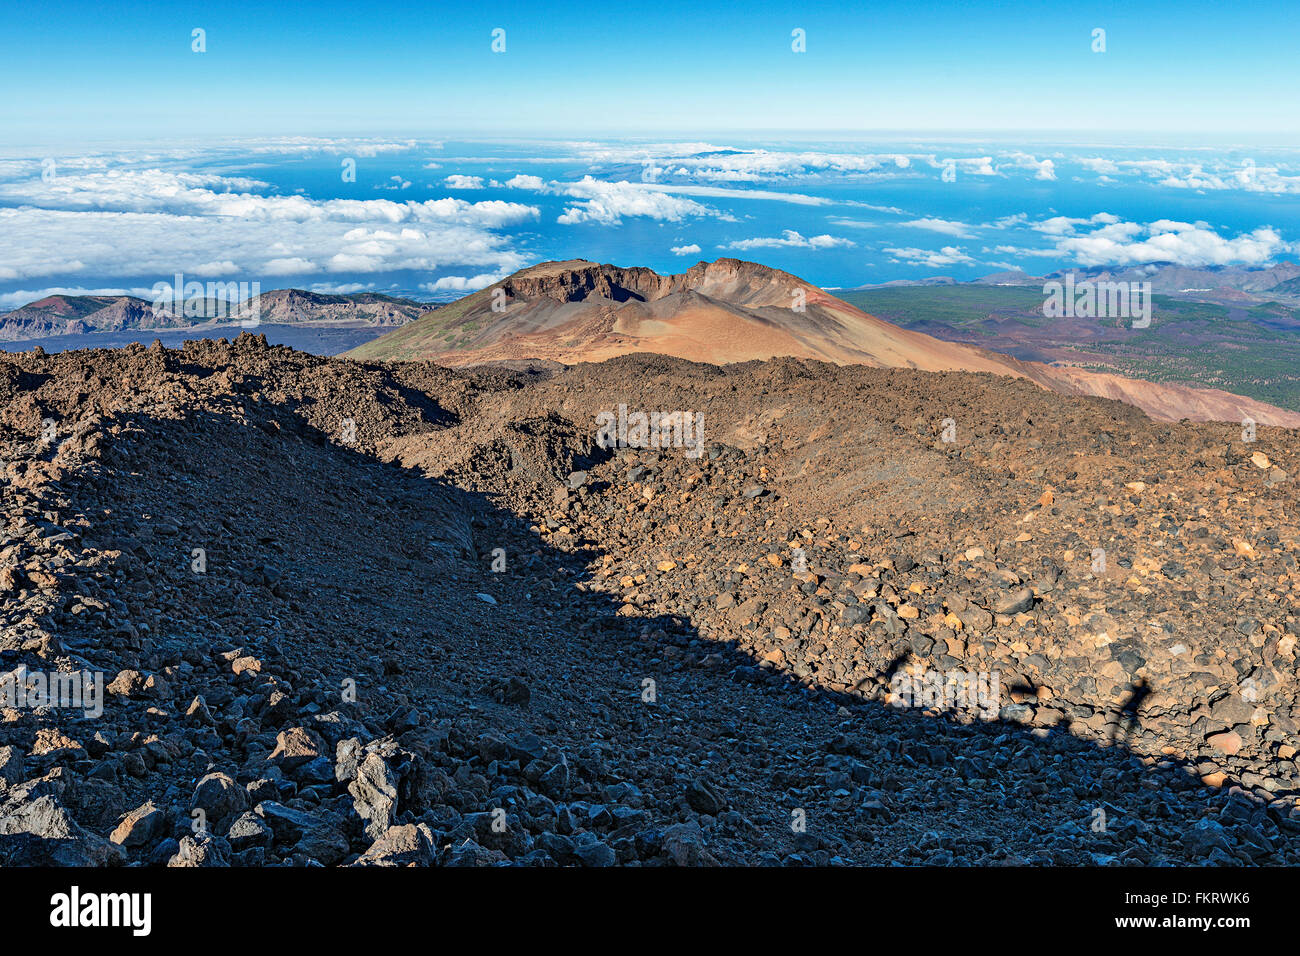 Sentiero escursionistico discese attraverso sharp rocce laviche dalla sommità del vulcano Teide (3718 m). Foto Stock